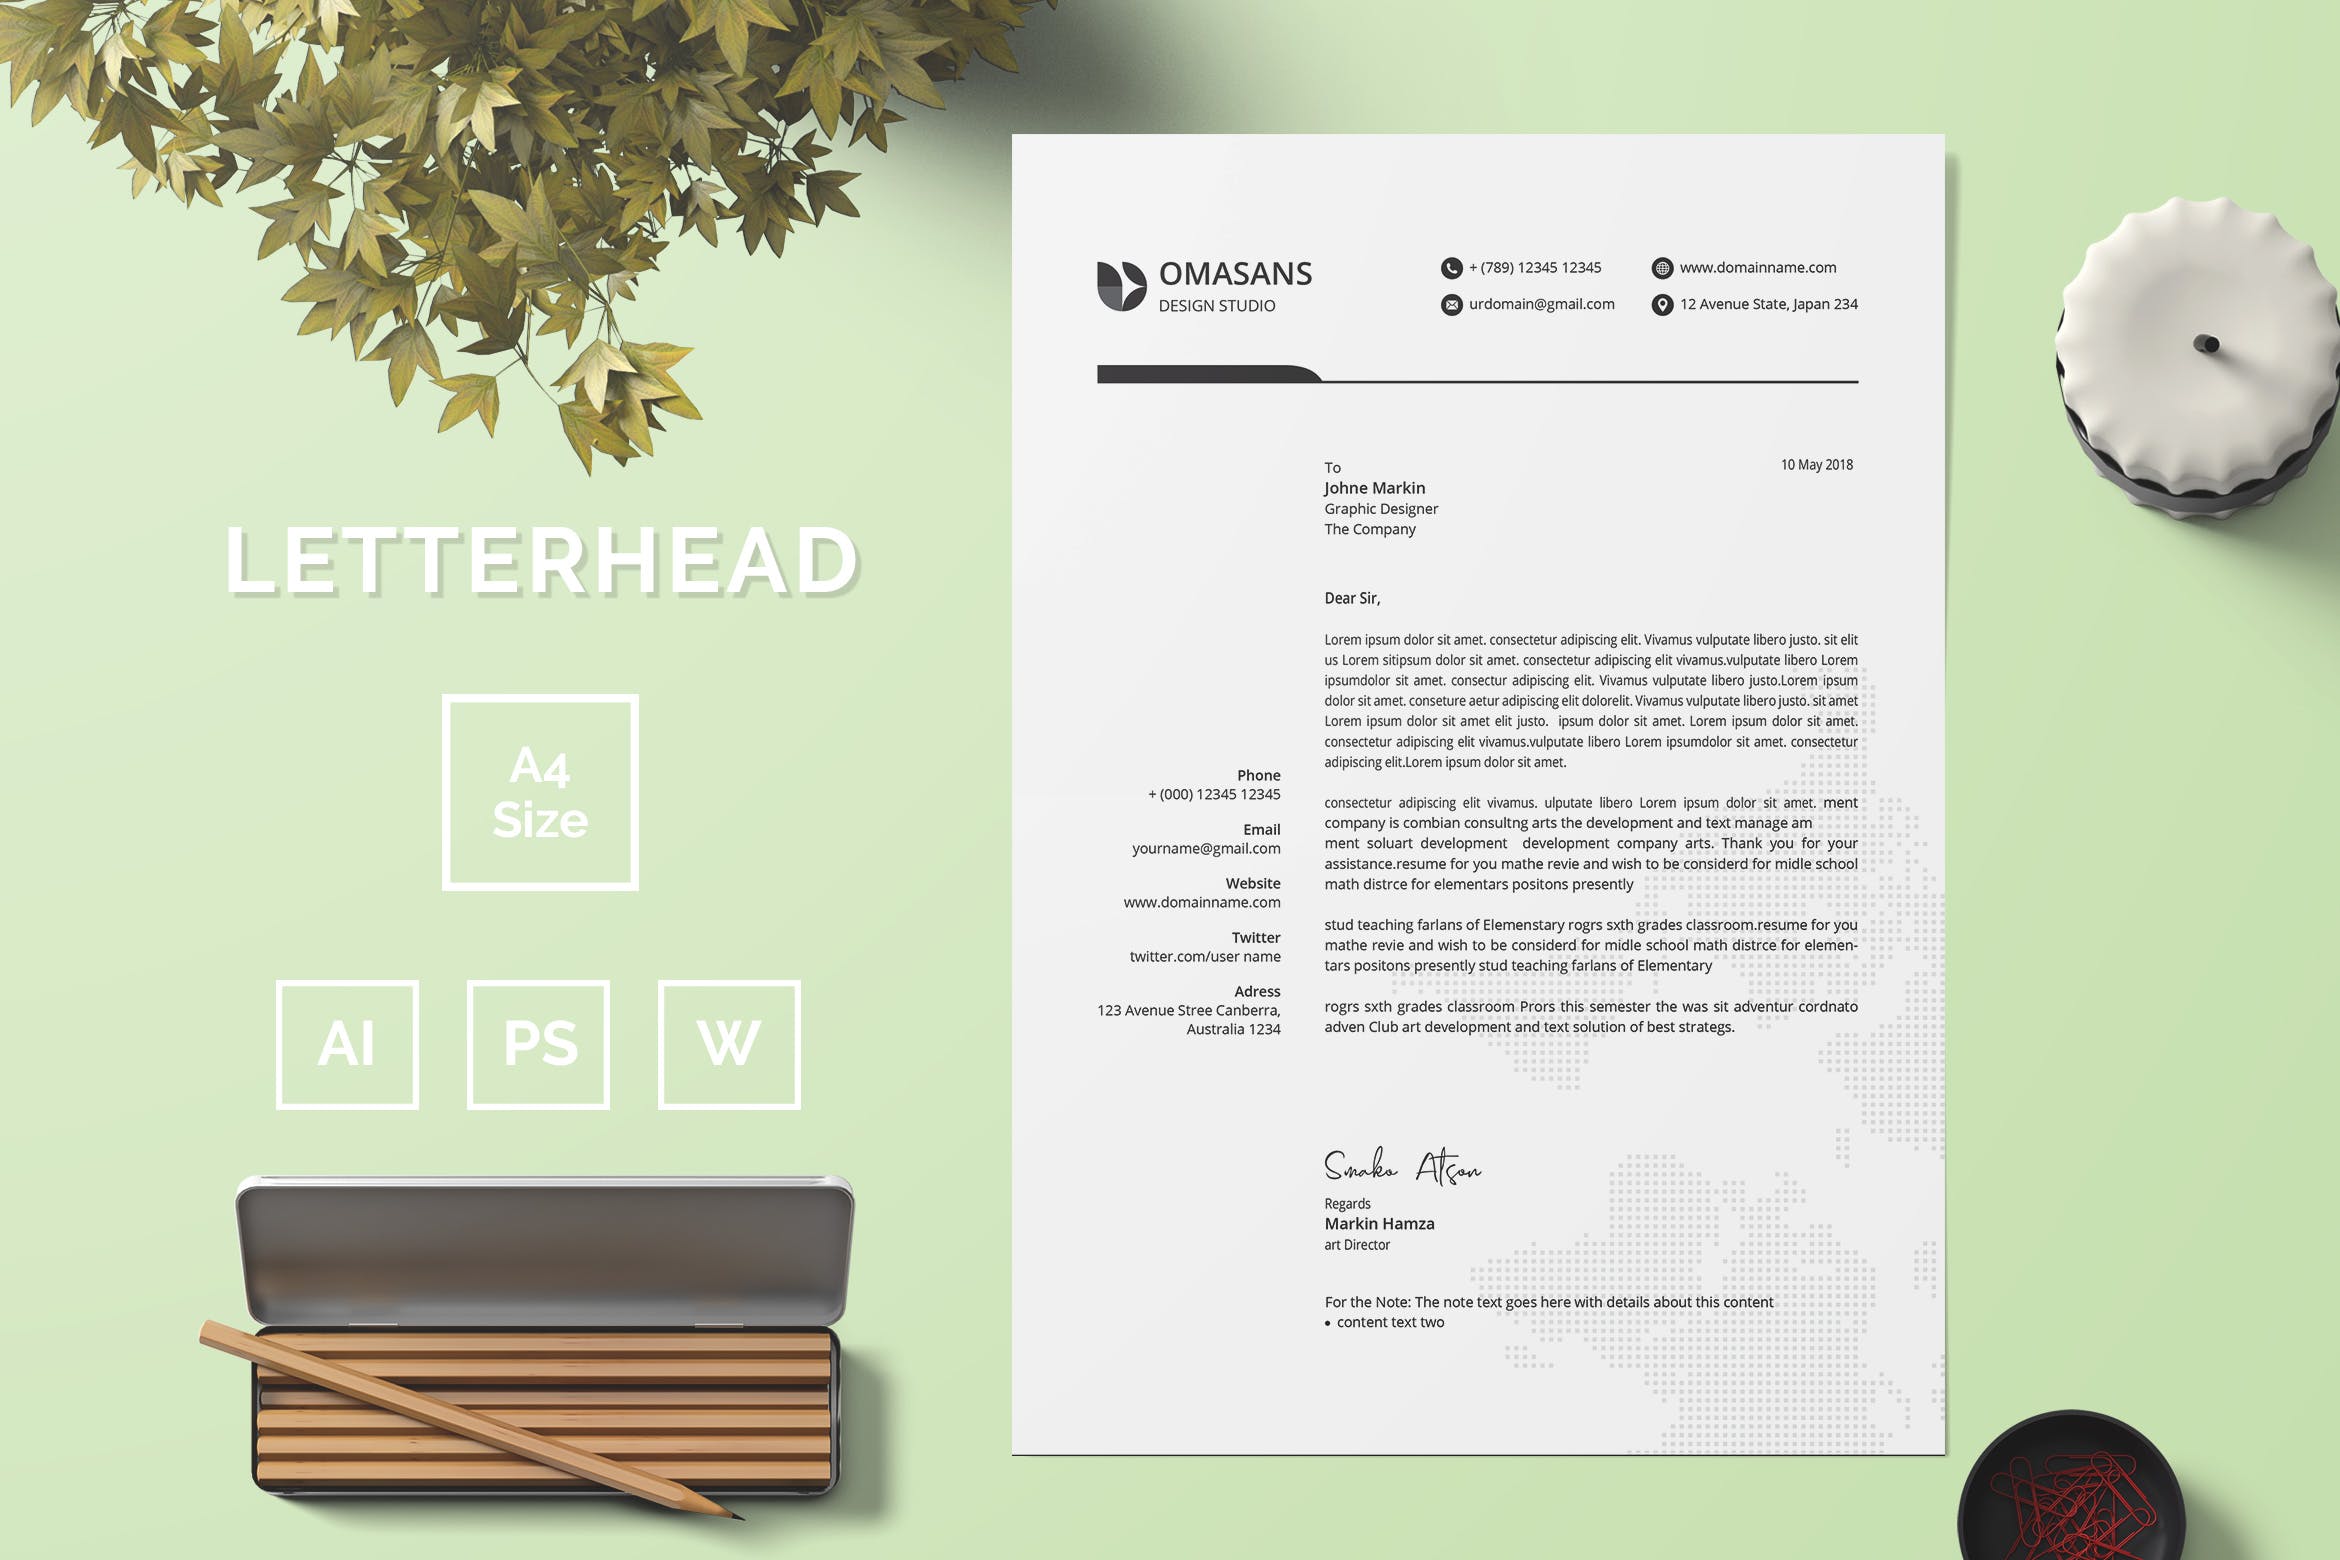 现代设计风格公开信/推荐信企业信纸设计模板03 Letterhead Template 03插图